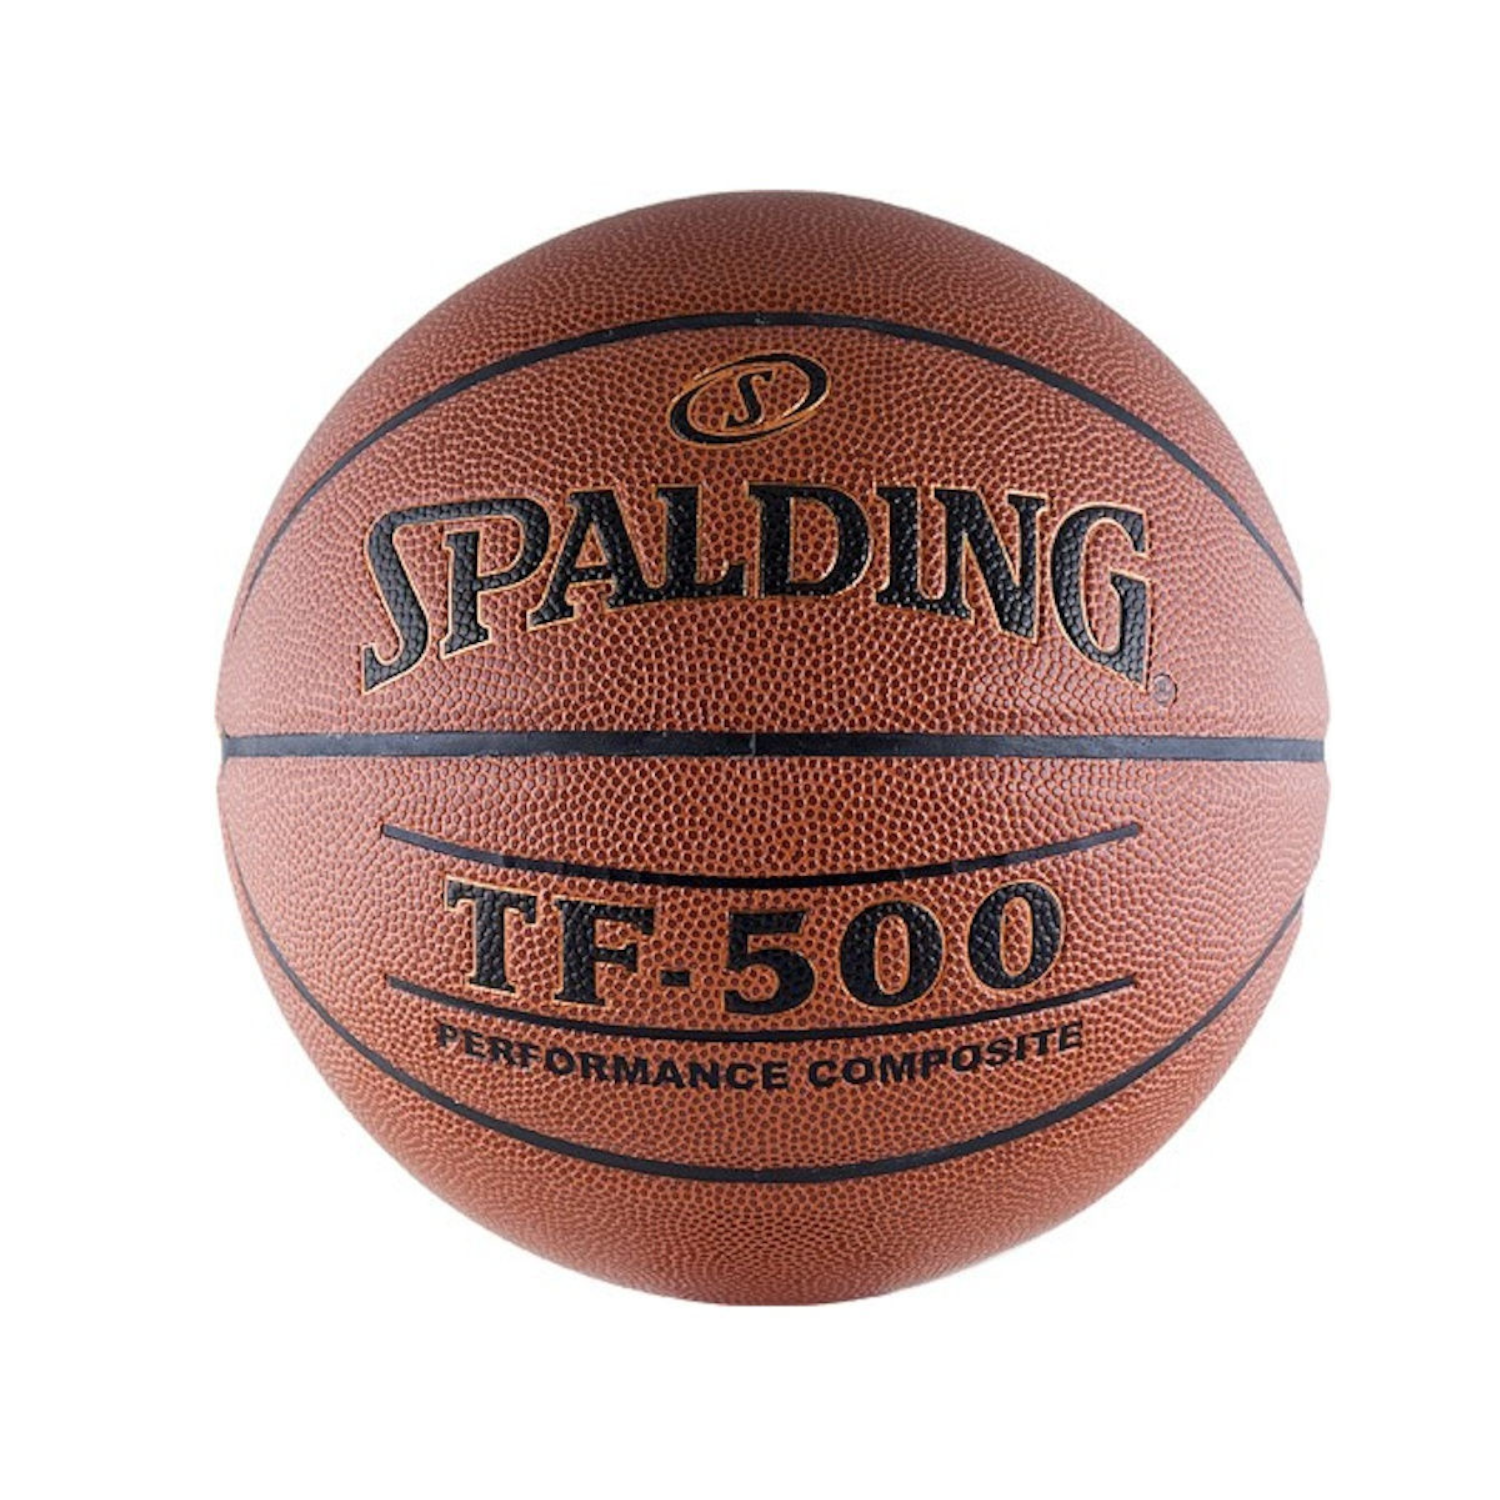 Баскетбольный мяч SPALDING TF-500 Performance размер: 6 - фото 1